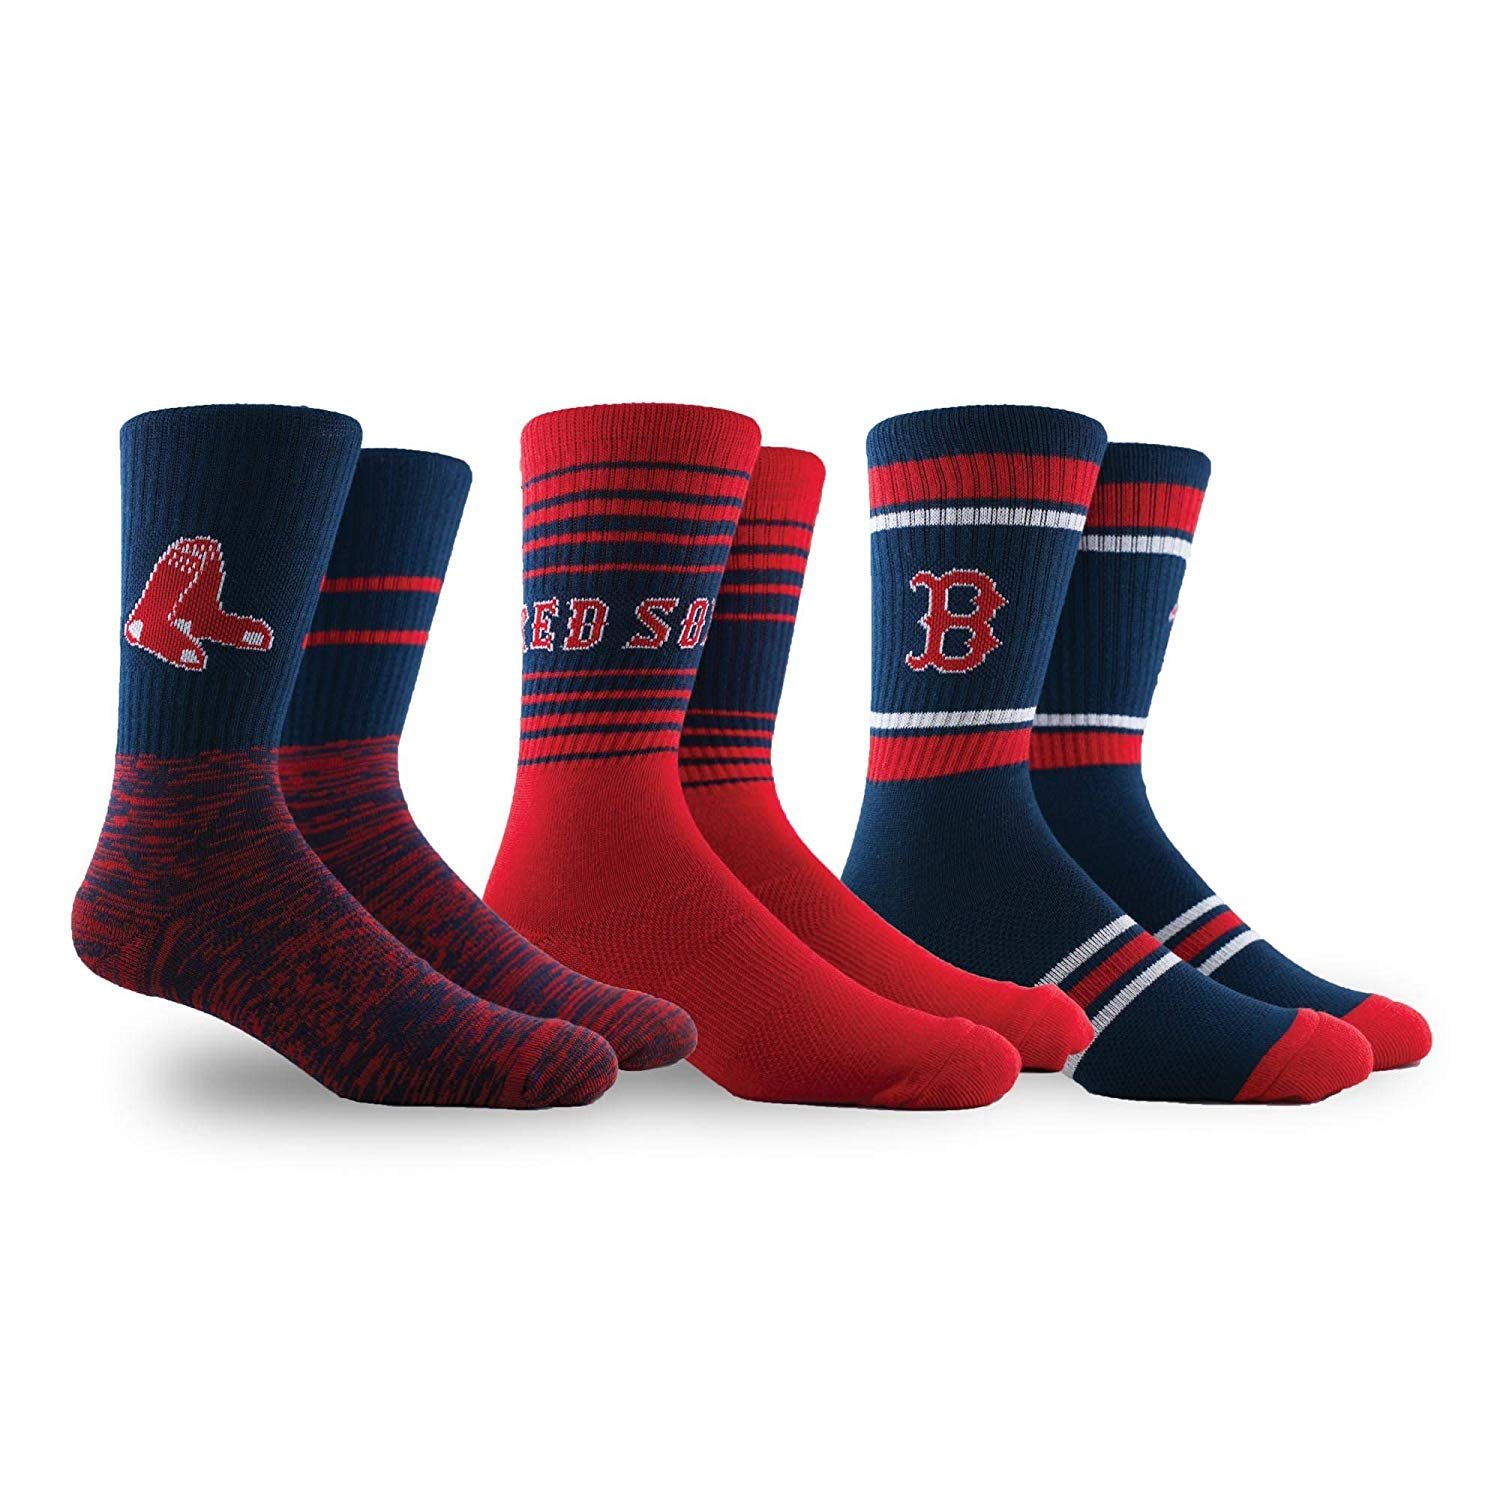 PKWY by Stance MLB Men's Team 3-Pack Socks | eBay